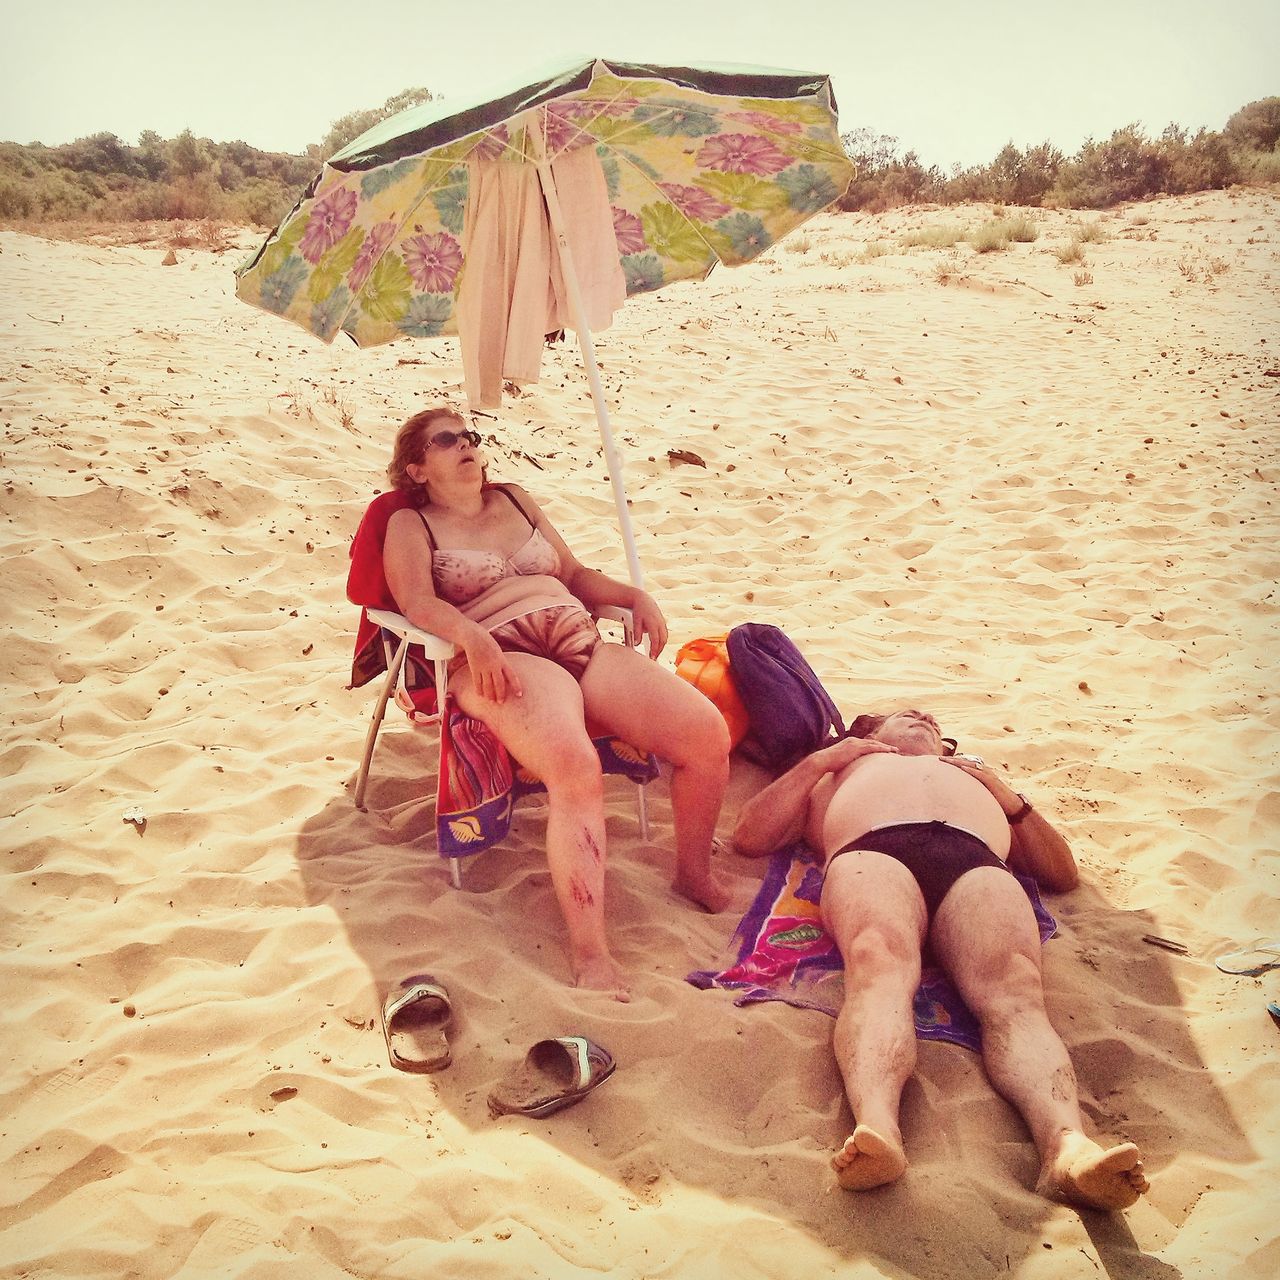 „A day on the beach" / To część większego projektu, który rozpoczął się w 2013 r. i dokumentuje życie na sycylijskich wybrzeż plażach. Część ze zdjęć została wykonana telefonem. Możecie je obejrzeć na profilu fotografa na Instagramie. "Tę konkretną fotografię zrobiłem pod koniec lipca 2014 roku. To typowa scena na plaży, gdzie ludzie spędzają całe dnie. Jedzą, bawią się, śpią, wykonują codzienne czynności. Można zobaczyć bardzo różne osoby, a przyjemnością jest przebywanie wśród tak wielu ludzi odpoczywający i korzystających ze słońca " - opisuje autor zdjęcia.